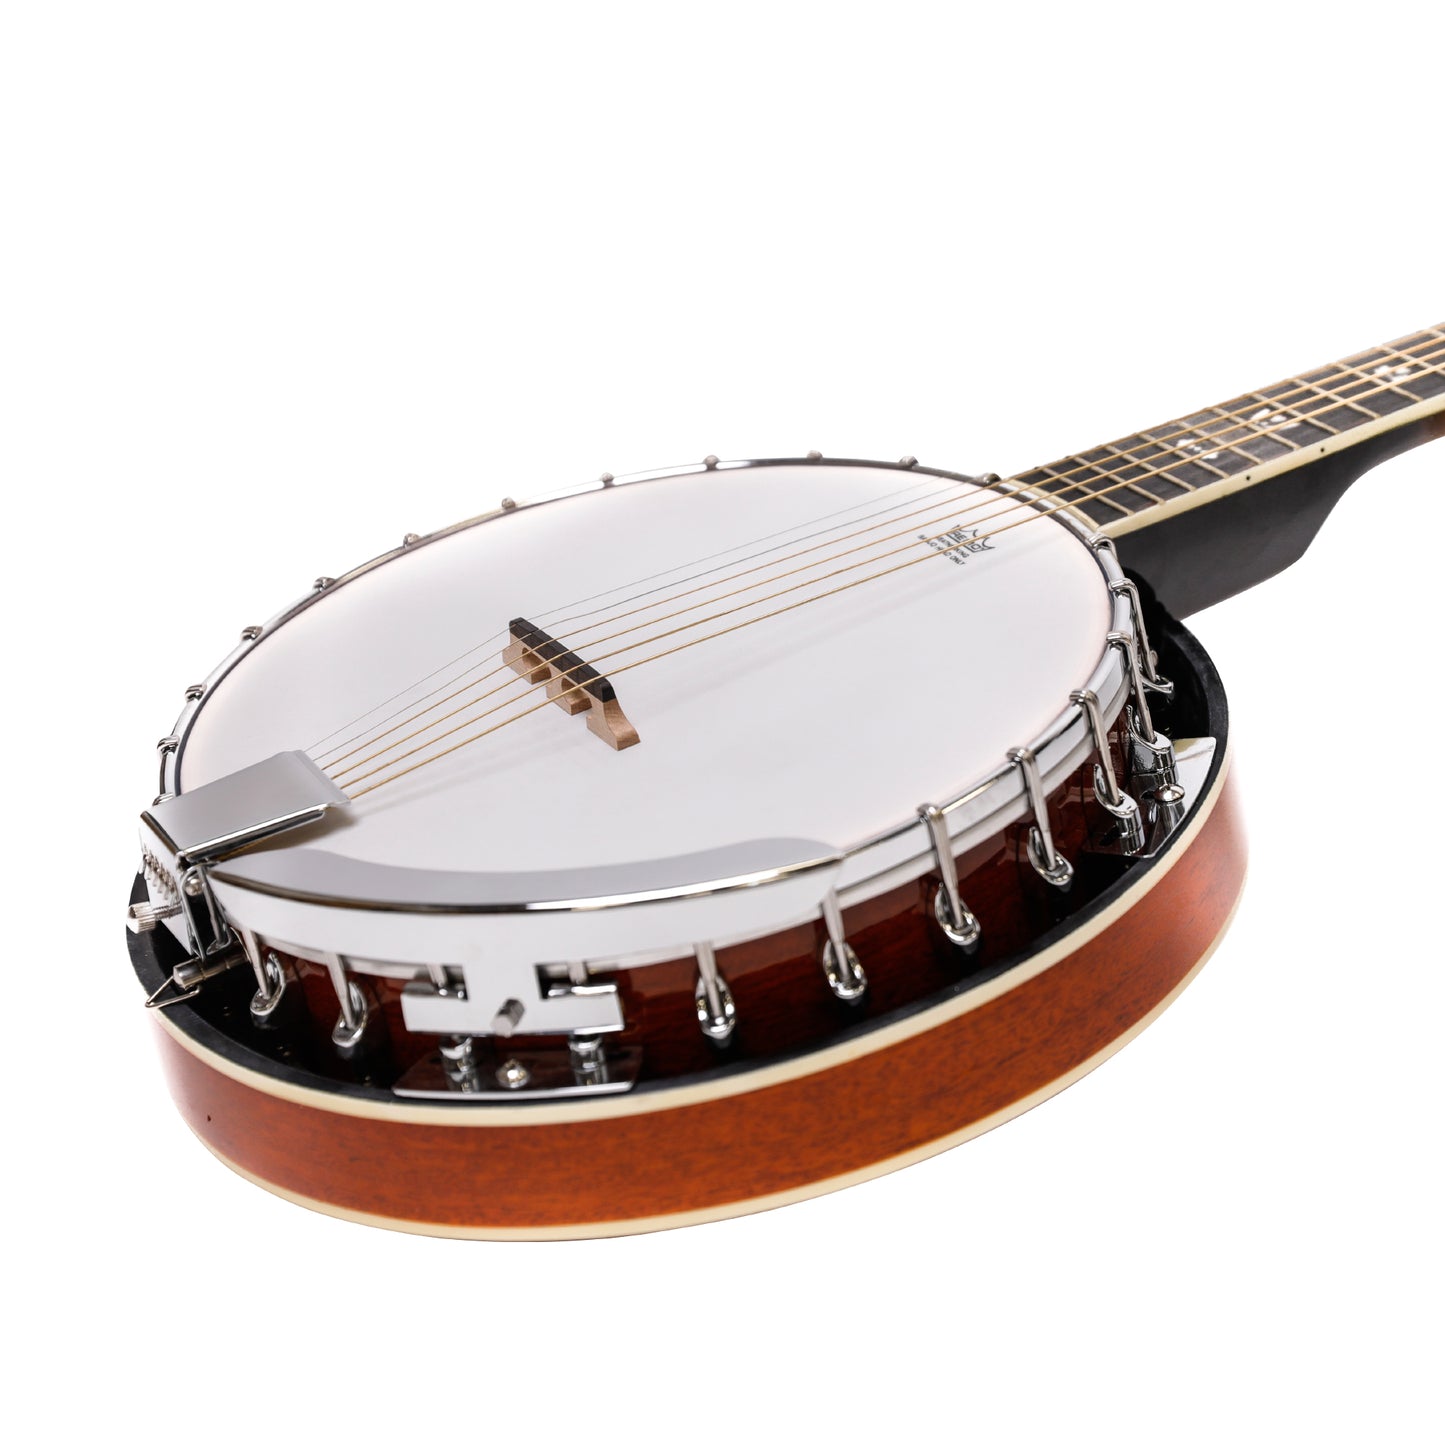 Heartland 6 corde Irish Banjo Left Handed Player Series 24 Bracket con finitura chiusa a raggi di sole